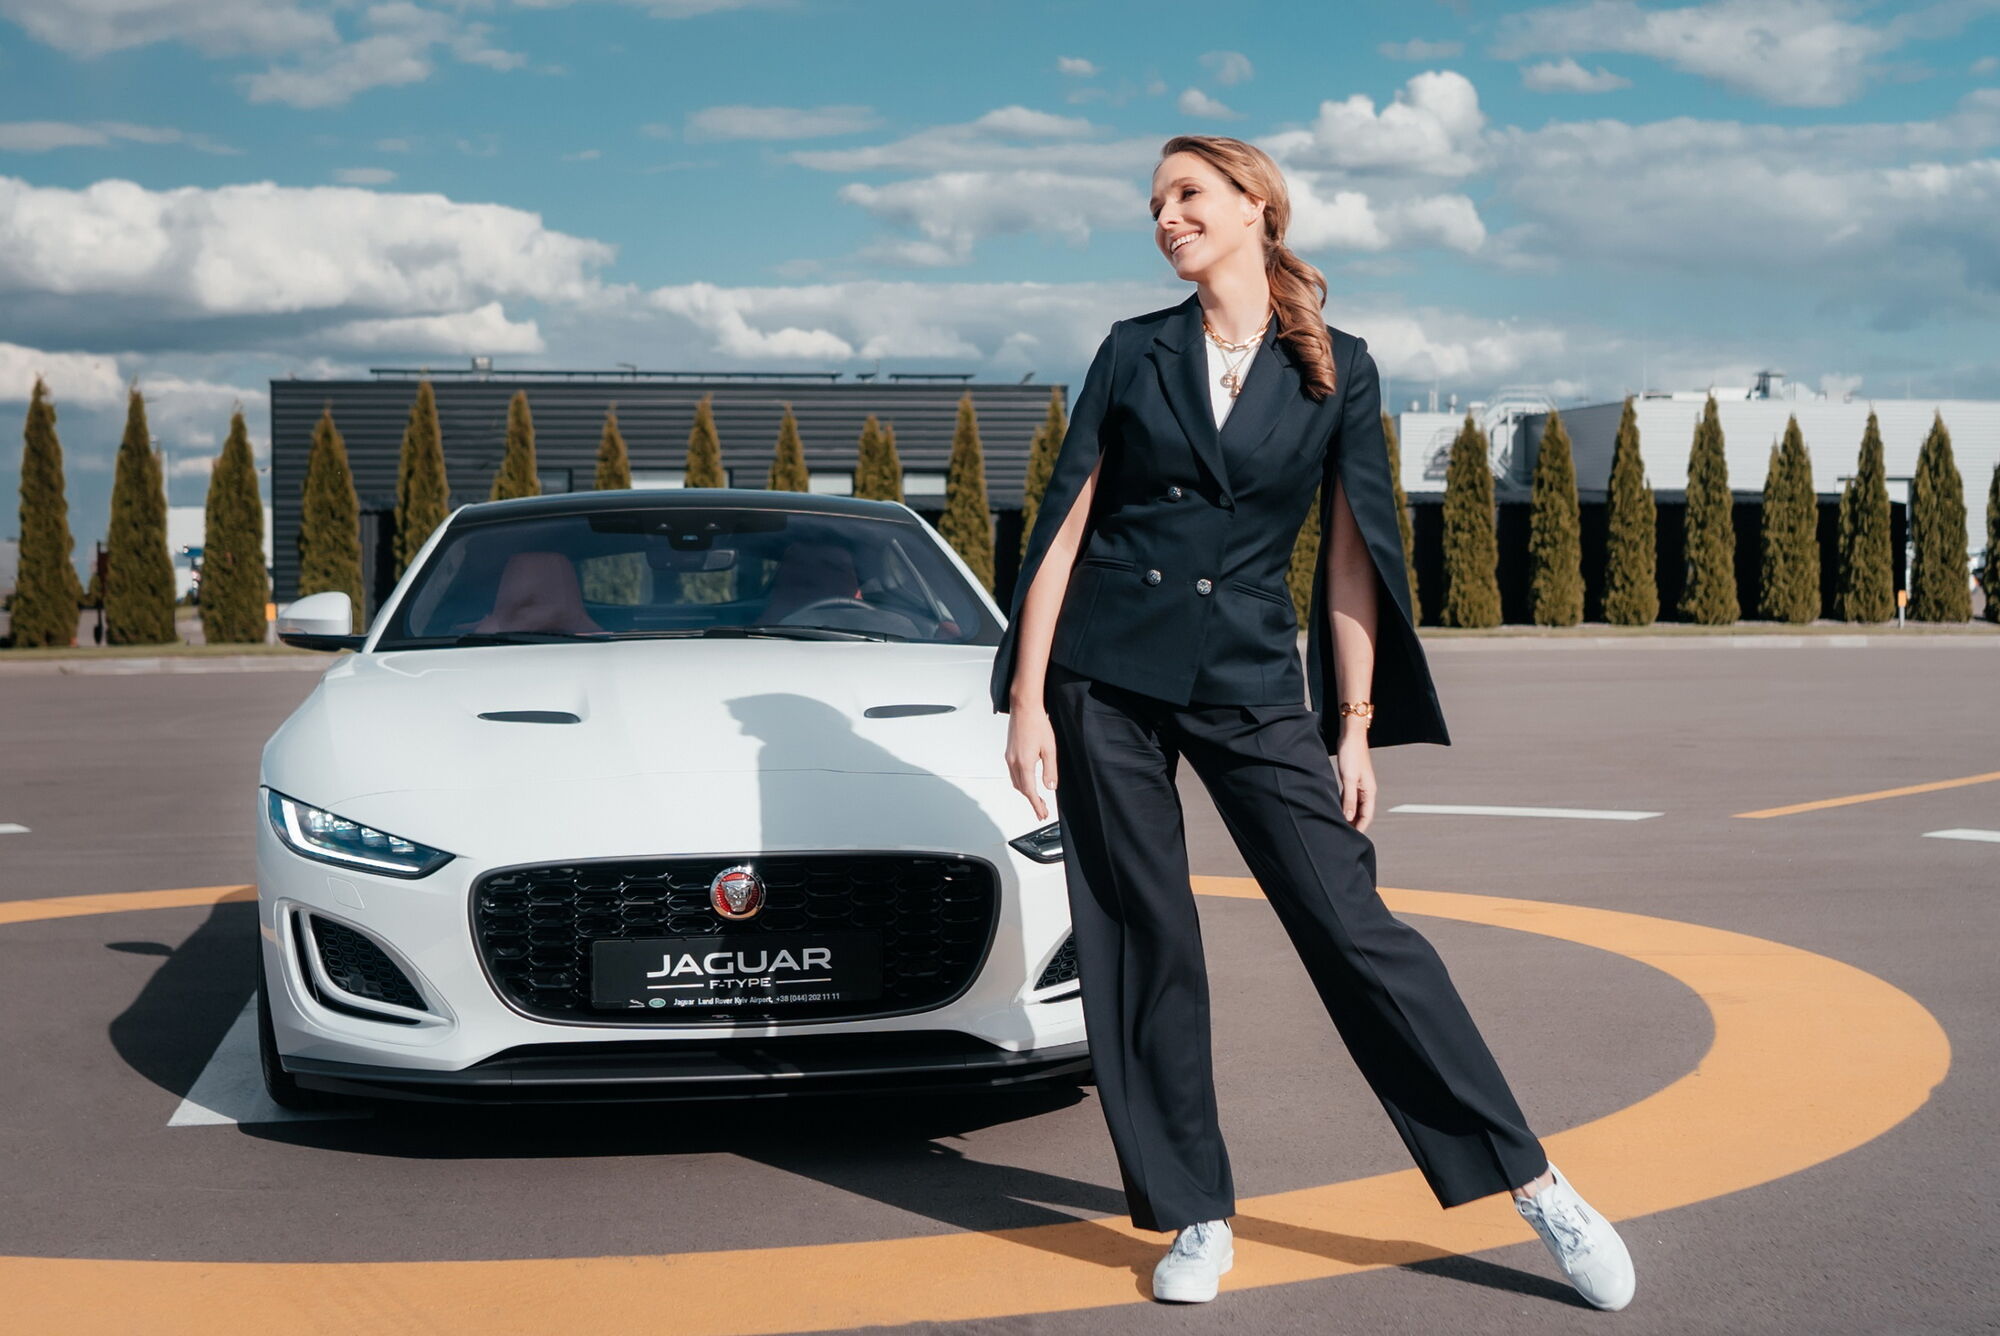 Катя Осадчая снялась в видео с Jaguar F-Type